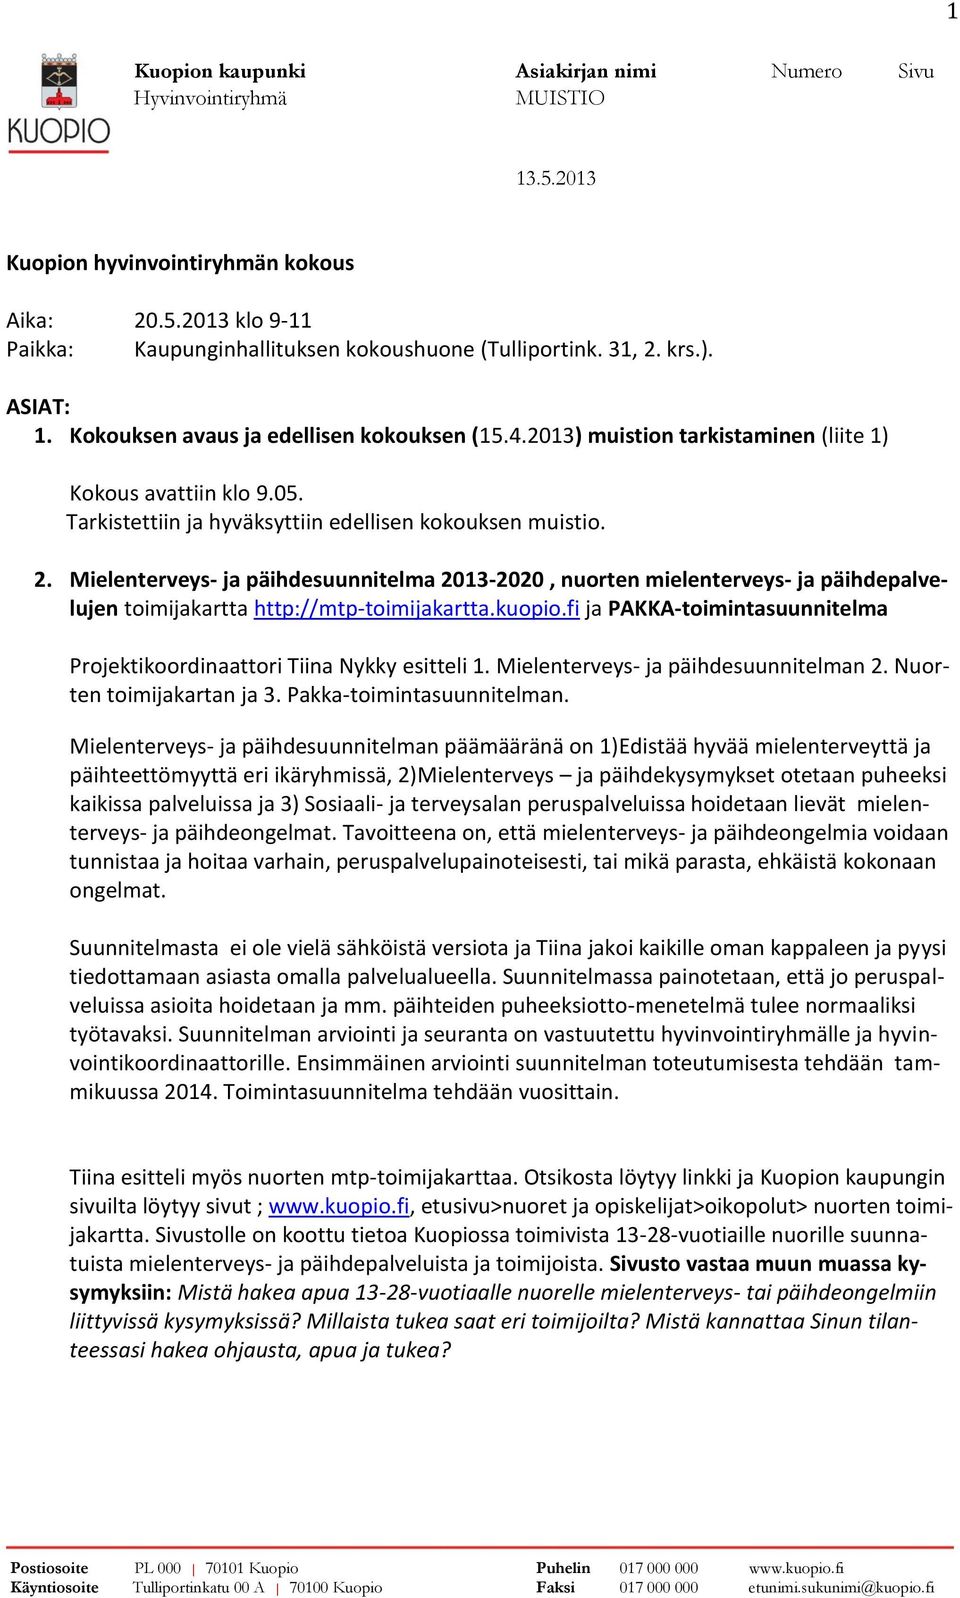 Mielenterveys- ja päihdesuunnitelma 2013-2020, nuorten mielenterveys- ja päihdepalvelujen toimijakartta http://mtp-toimijakartta.kuopio.